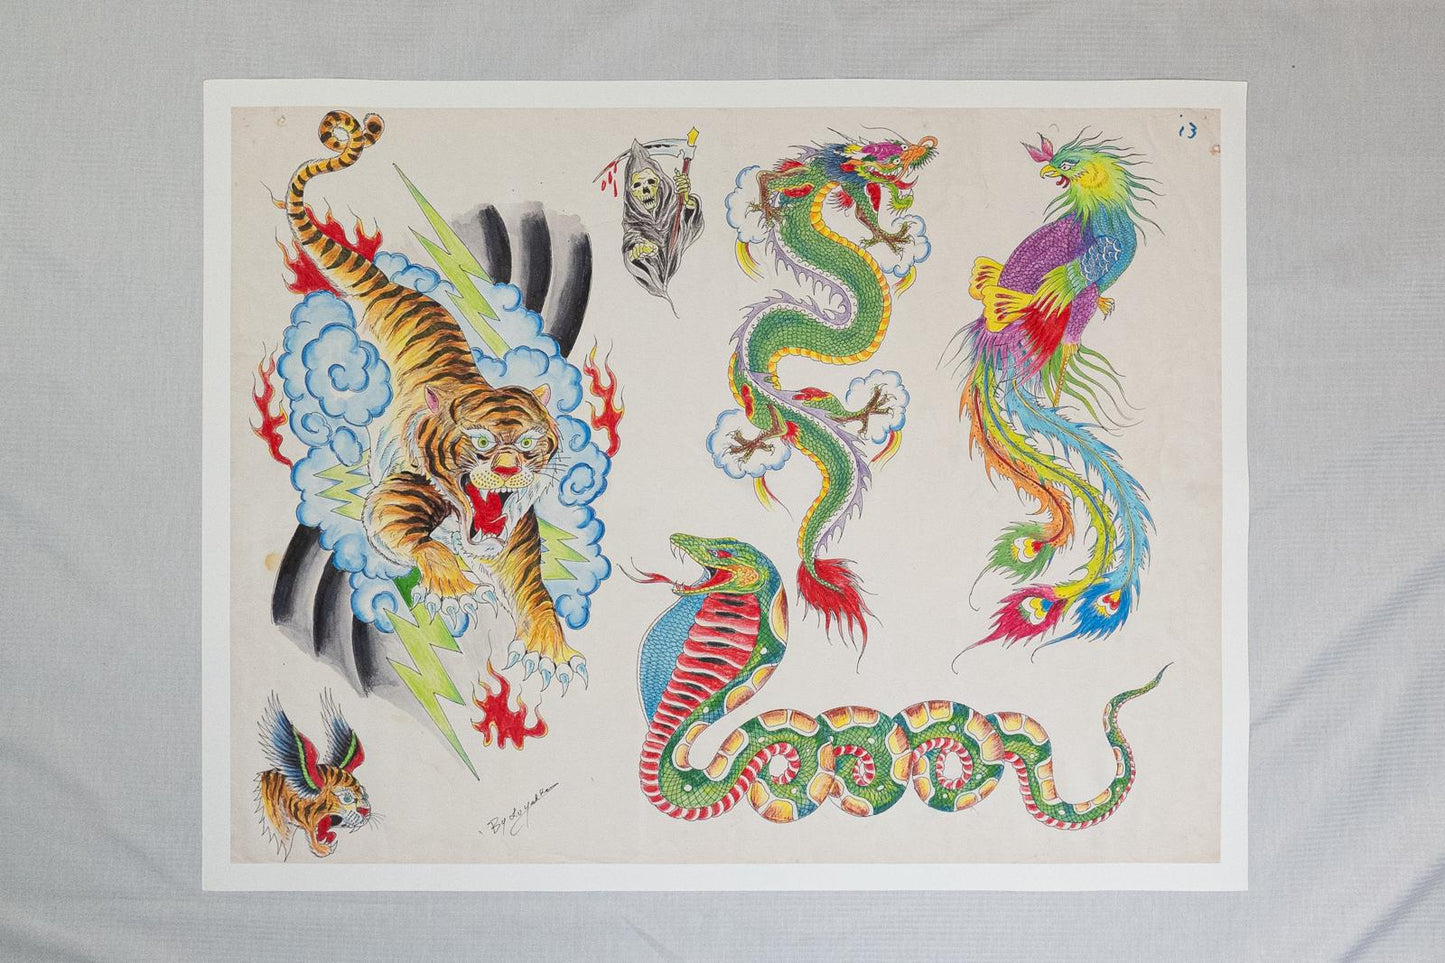 Ricky Lo 1980s Hong Kong Traditional Tattoo Flash Sheet Art Print